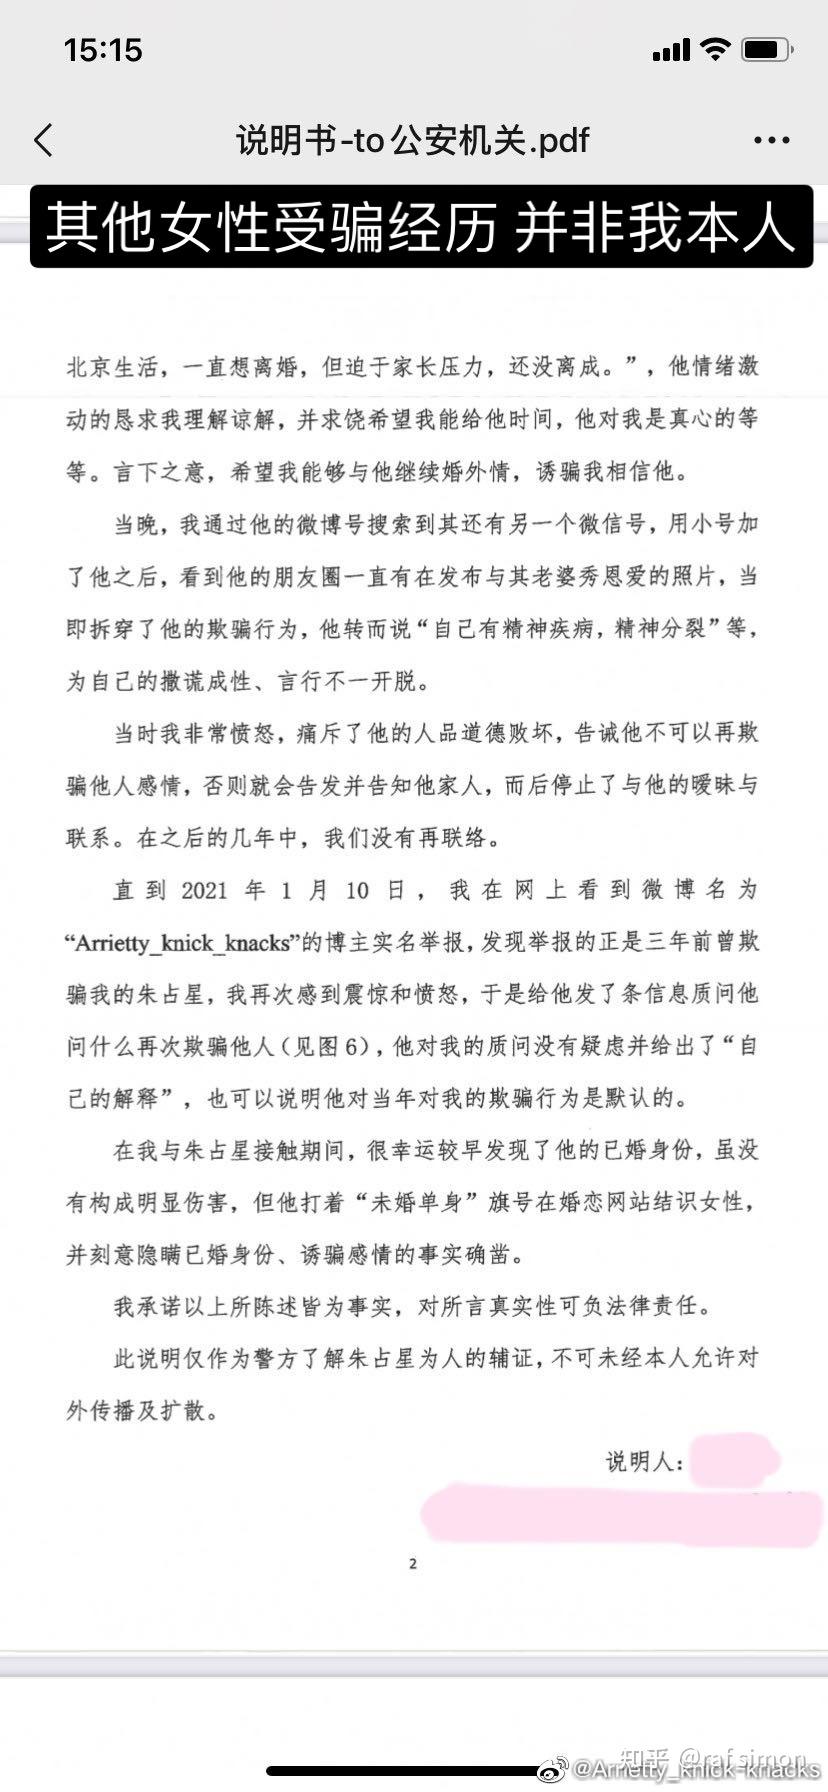 朱占星,北京大学数学科学学院助理教授,涉嫌猥亵,性骚扰